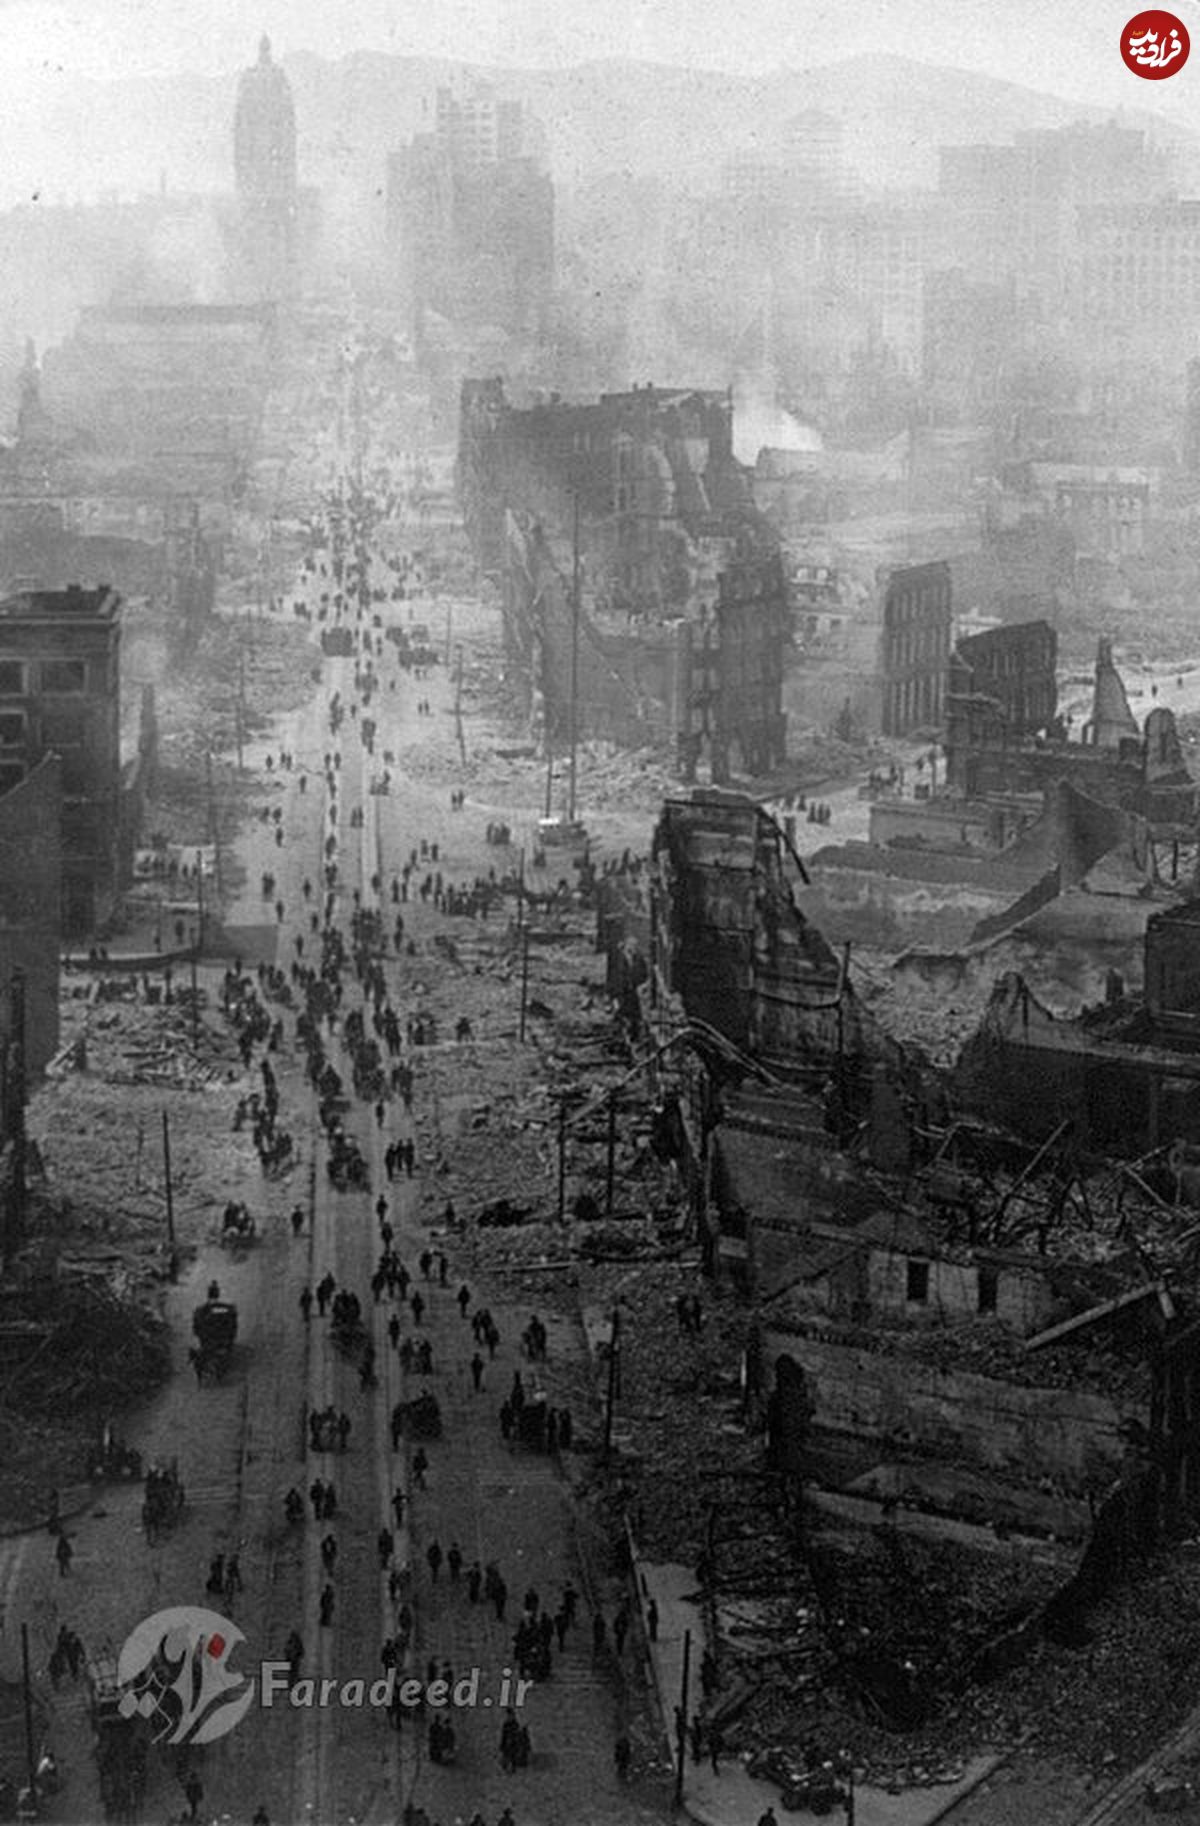 سان فرانسیسکو، پس از زلزله سال 1906 میلادی